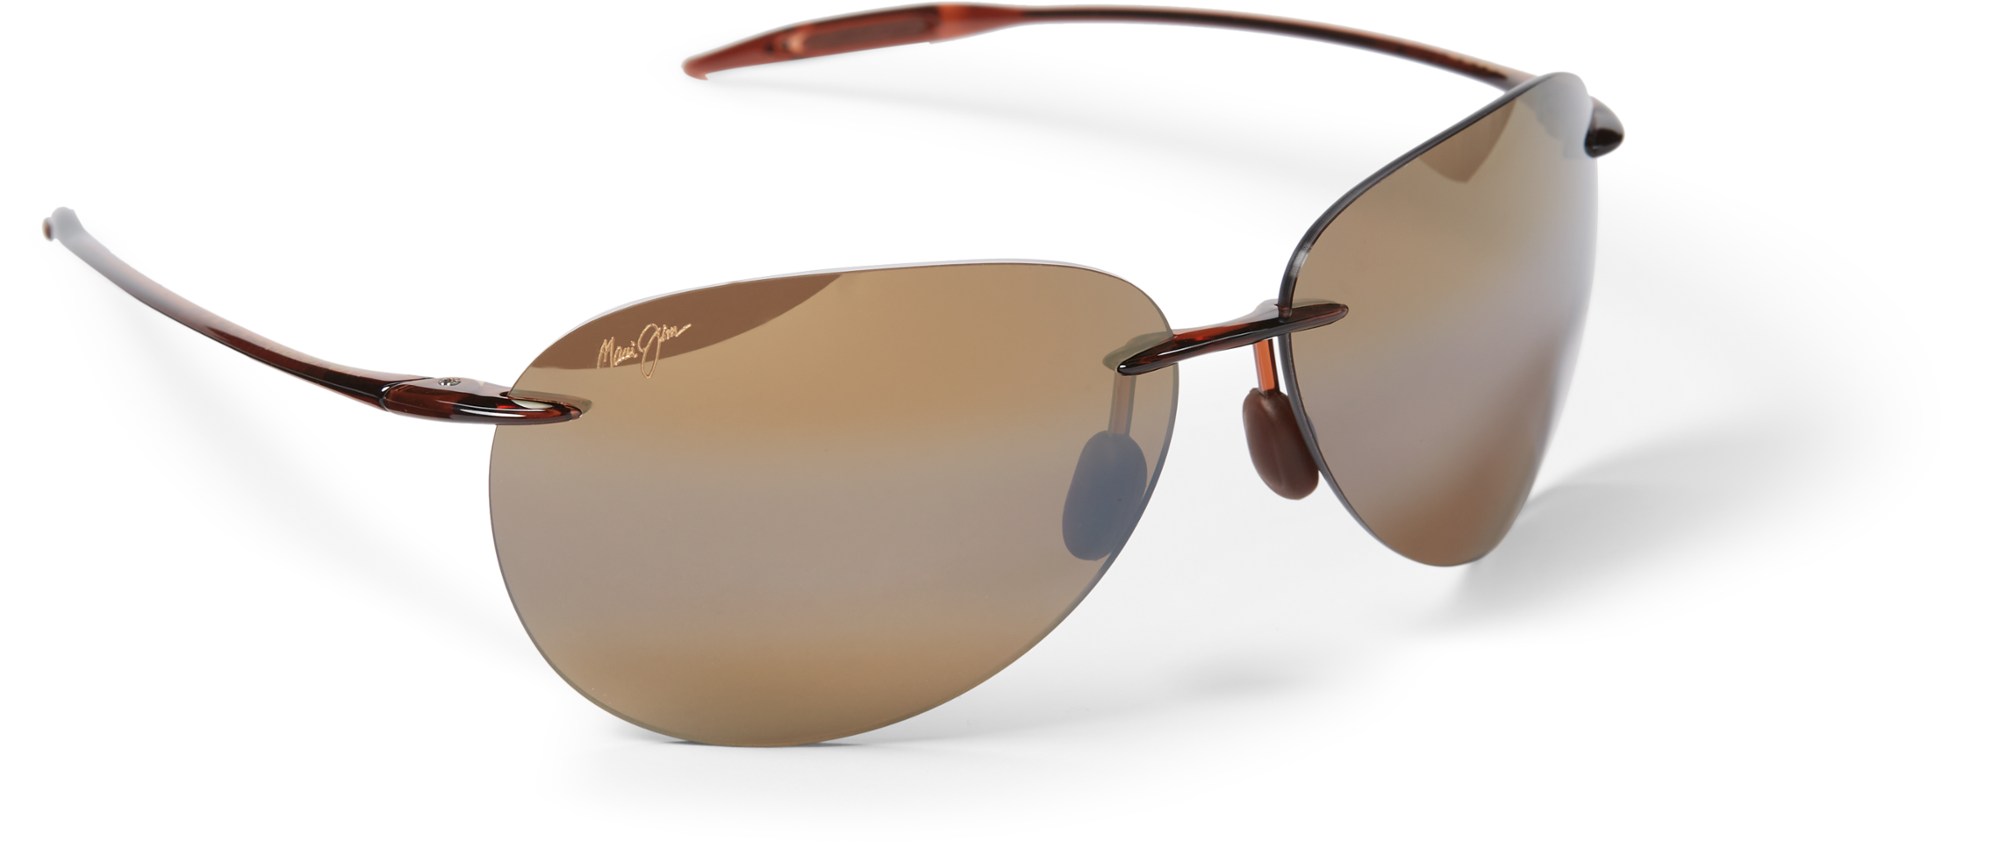 Поляризованные солнцезащитные очки Sugar Beach Maui Jim, коричневый al khalili jim sunfall